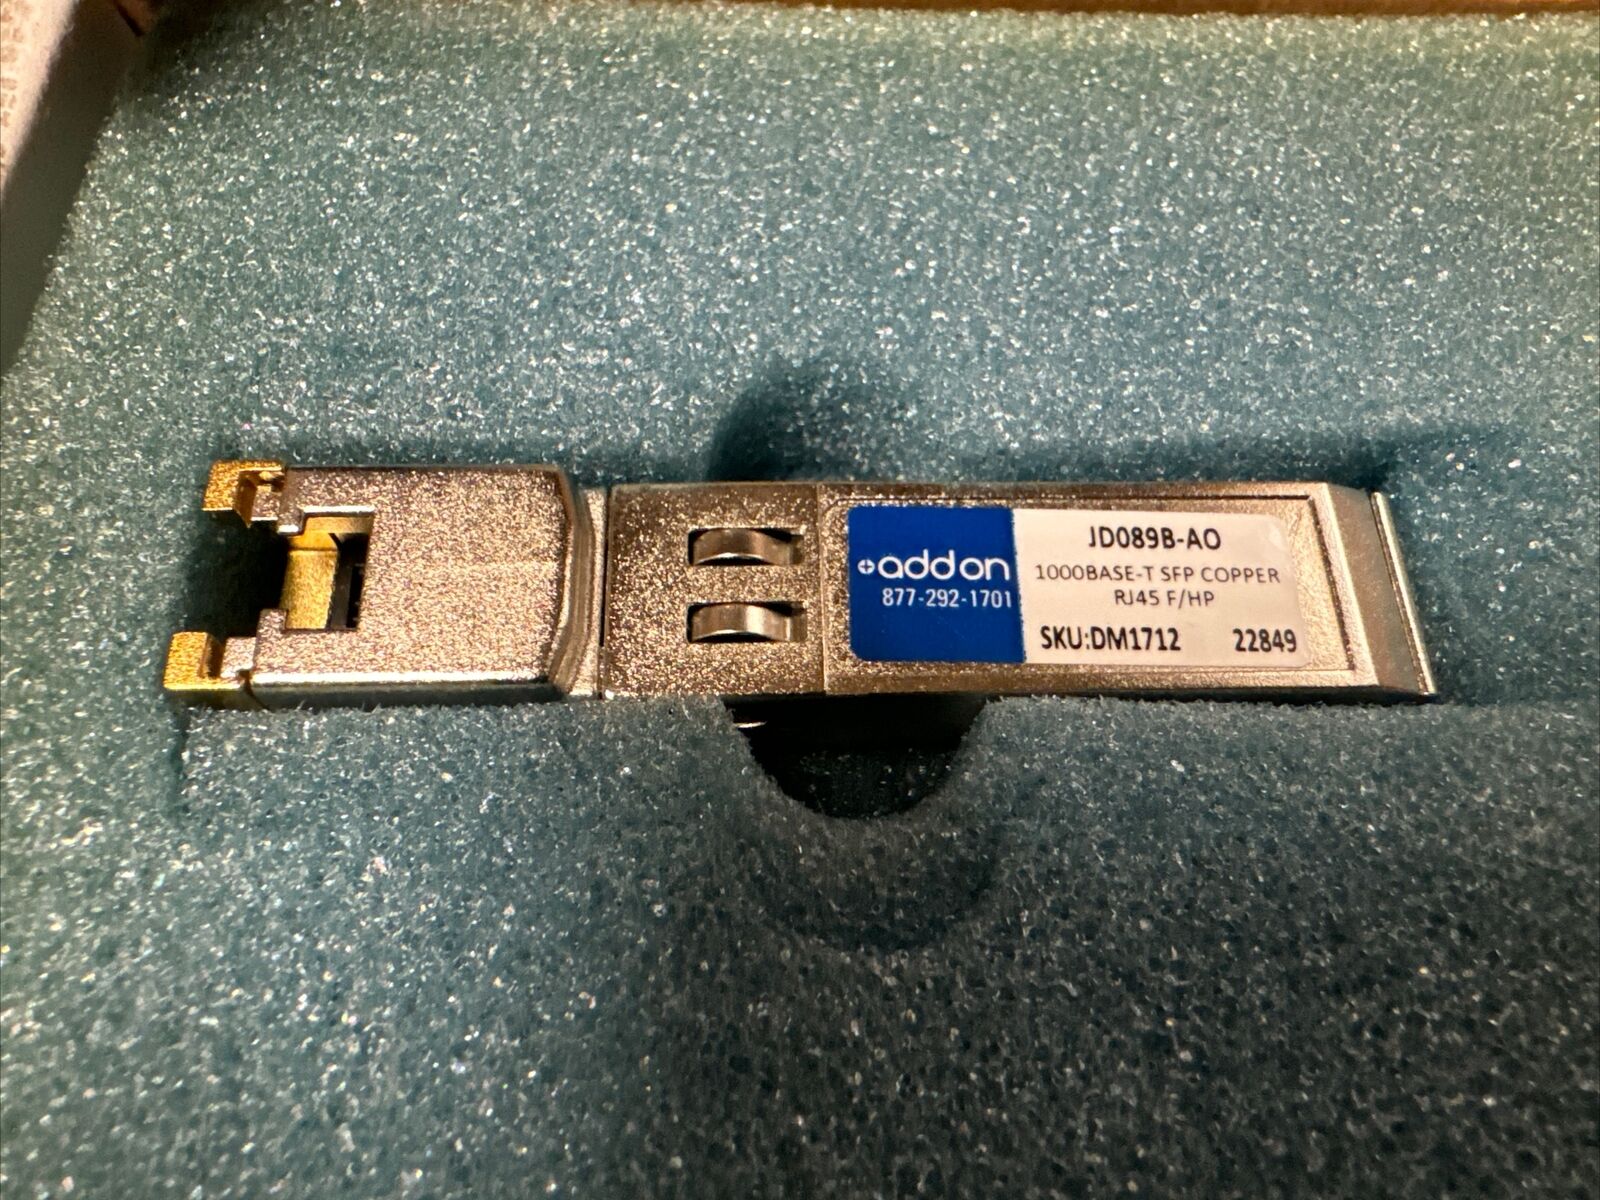 Addon JD089B Gigabit Ethernet SFP Transceiver